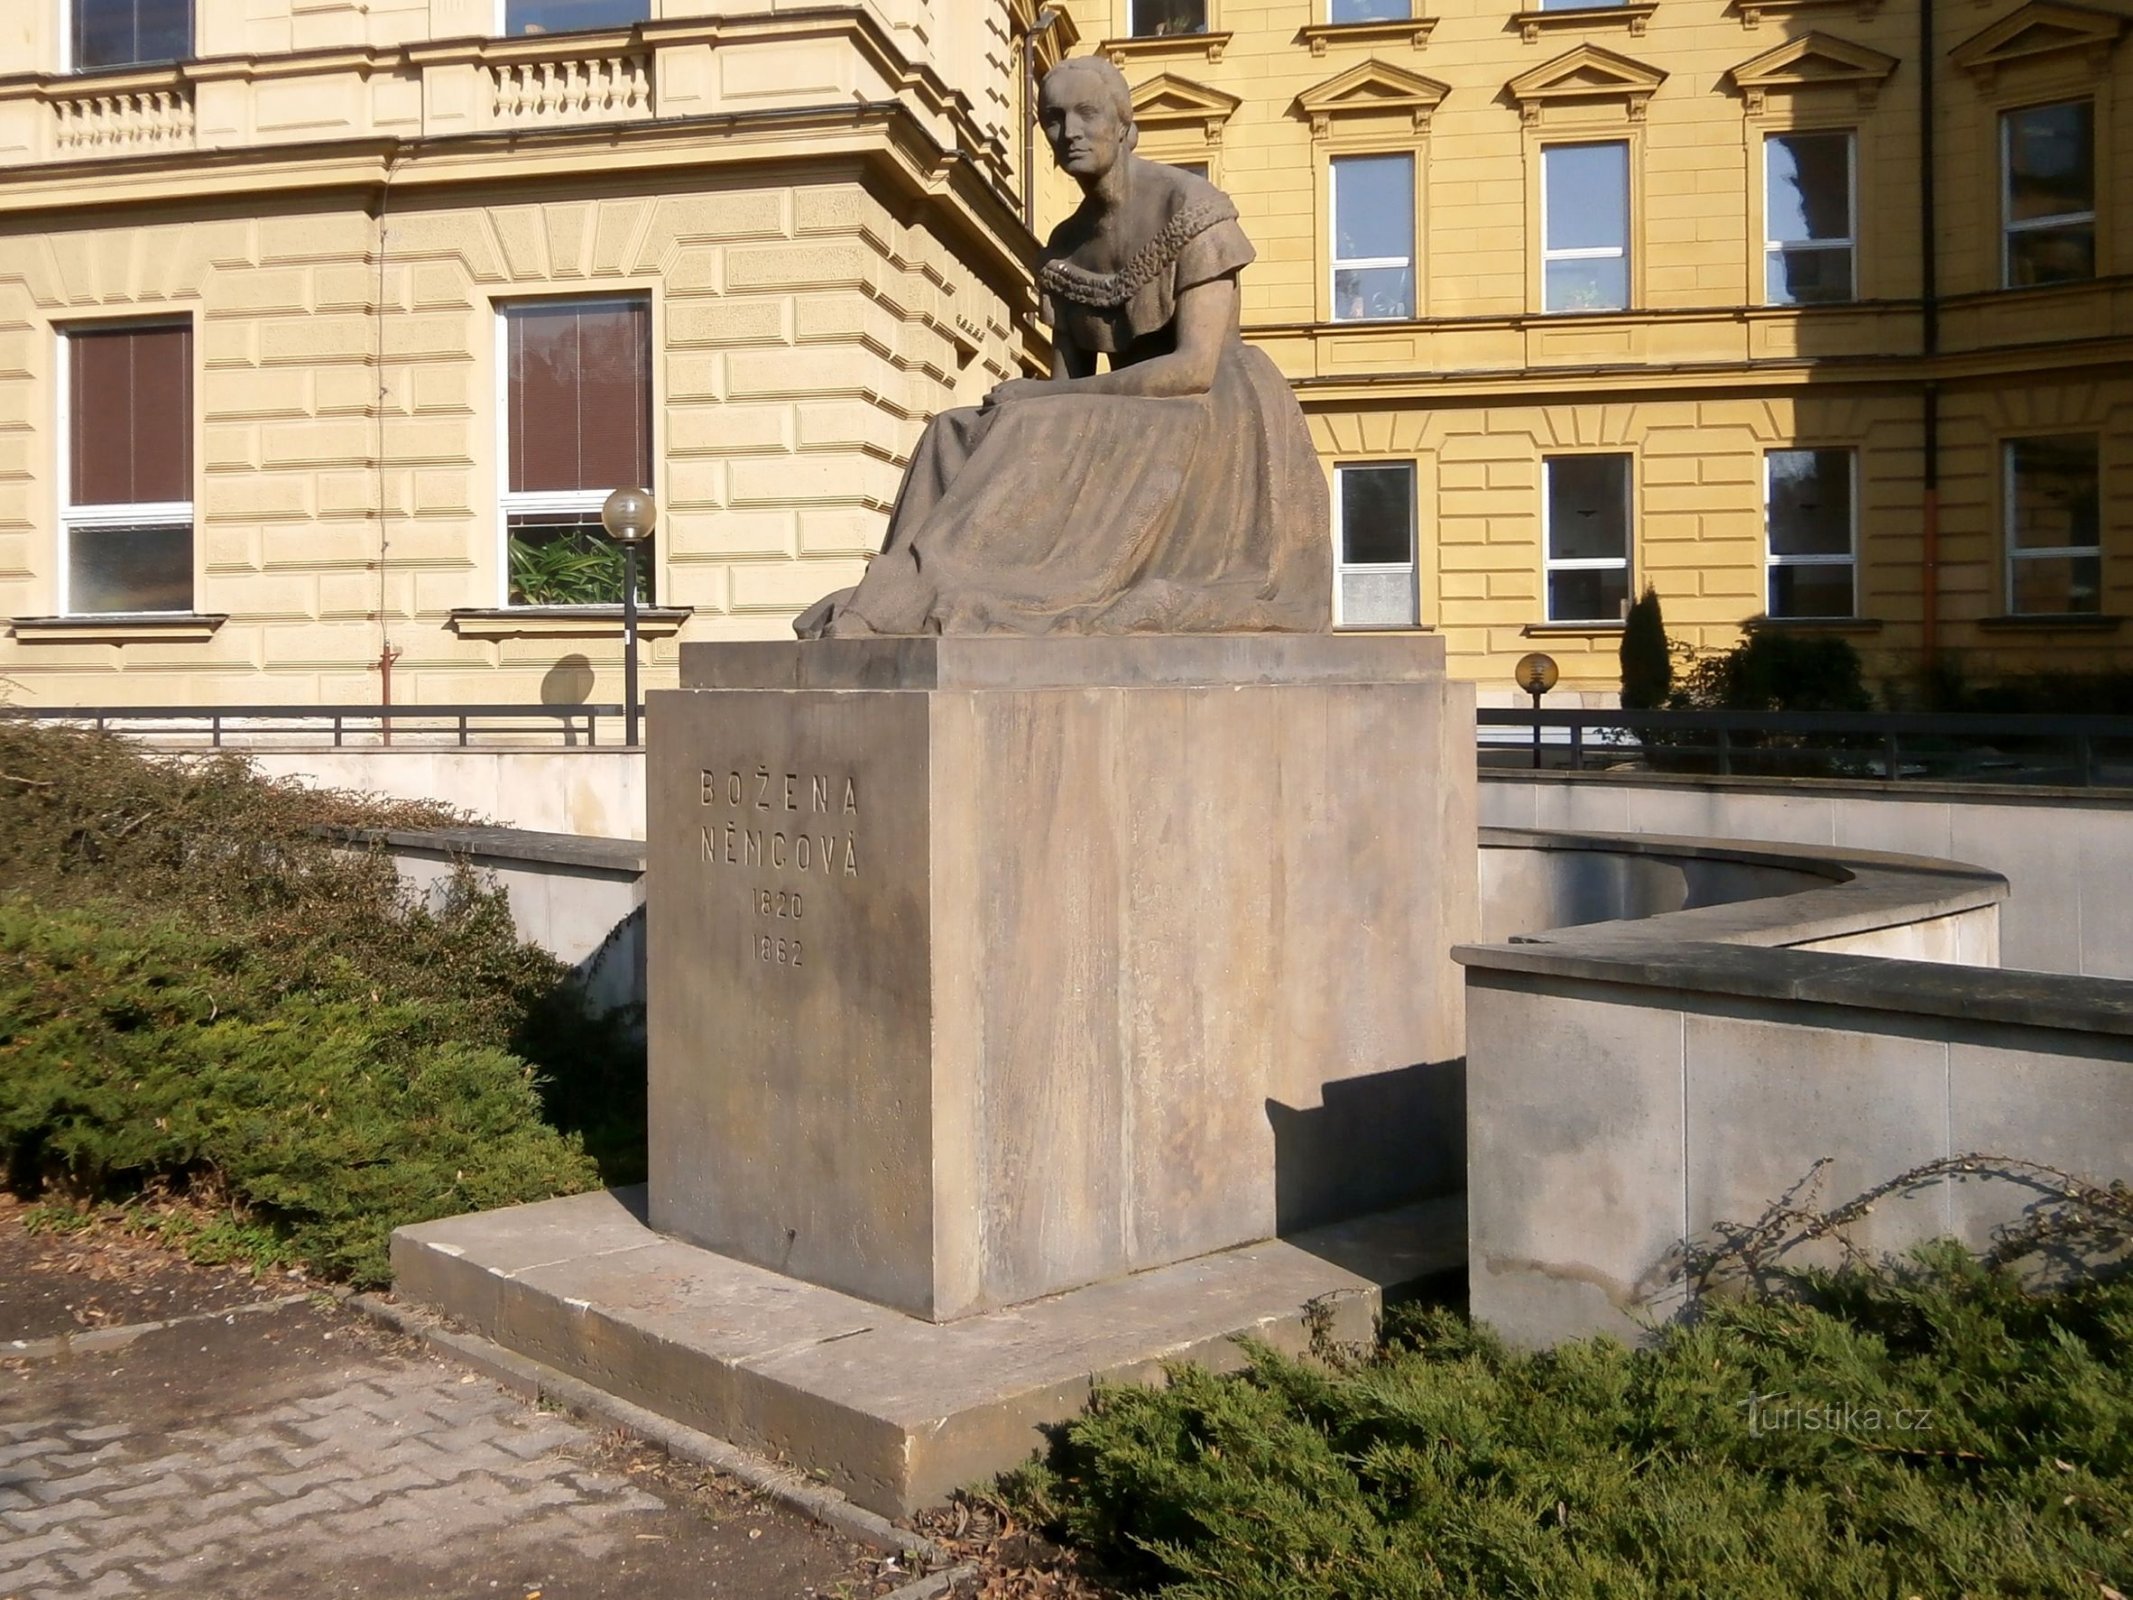 Monument à Bozena Němcová (Hradec Králové, 26.3.2014er juin XNUMX)